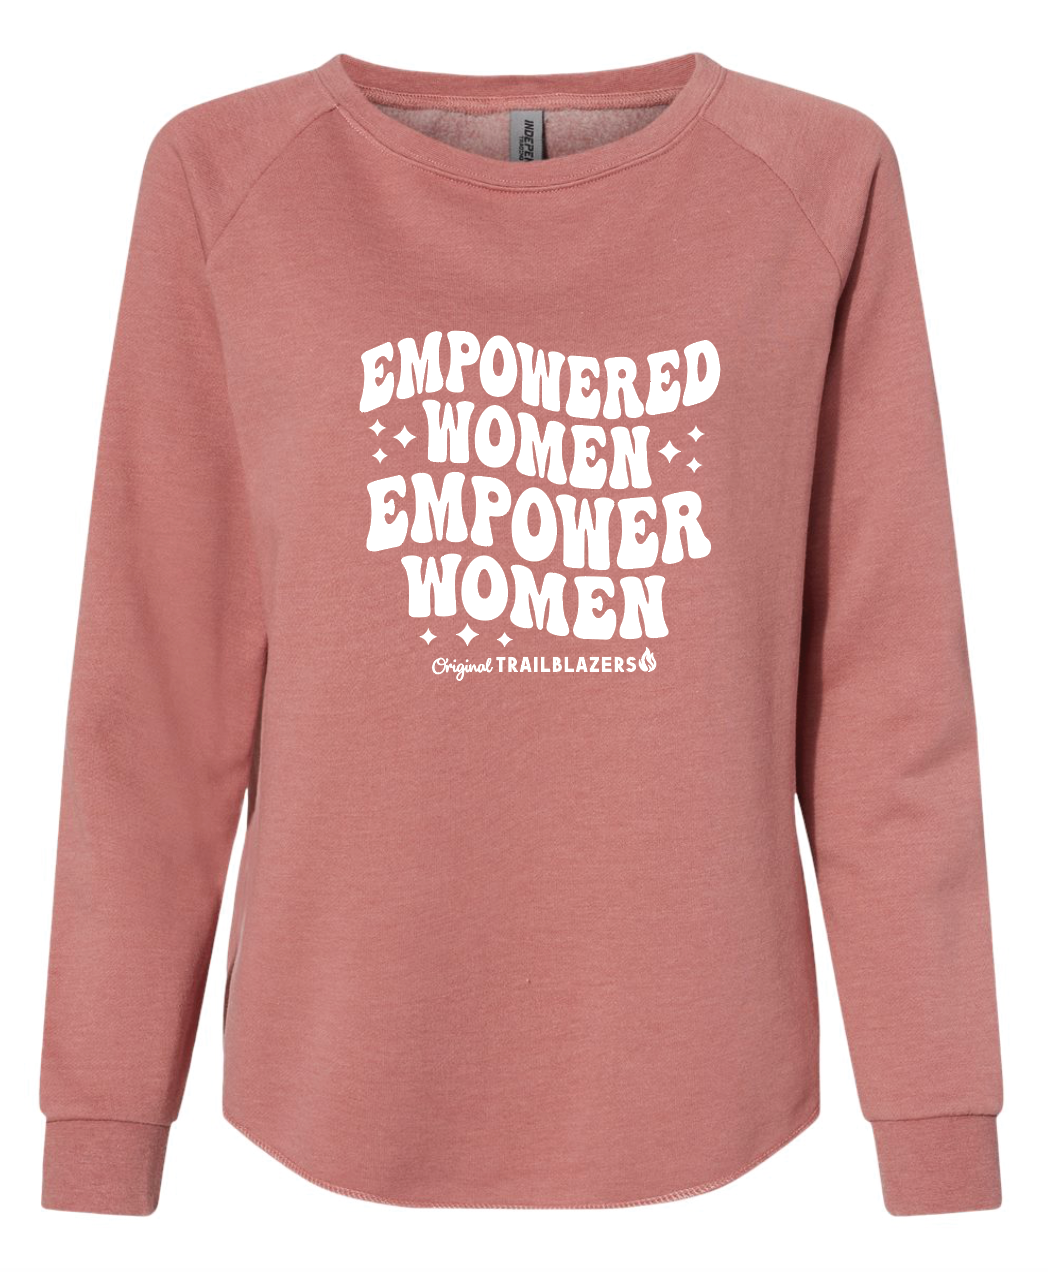 Empowered Women Empower Women Ladies Independent Sweater